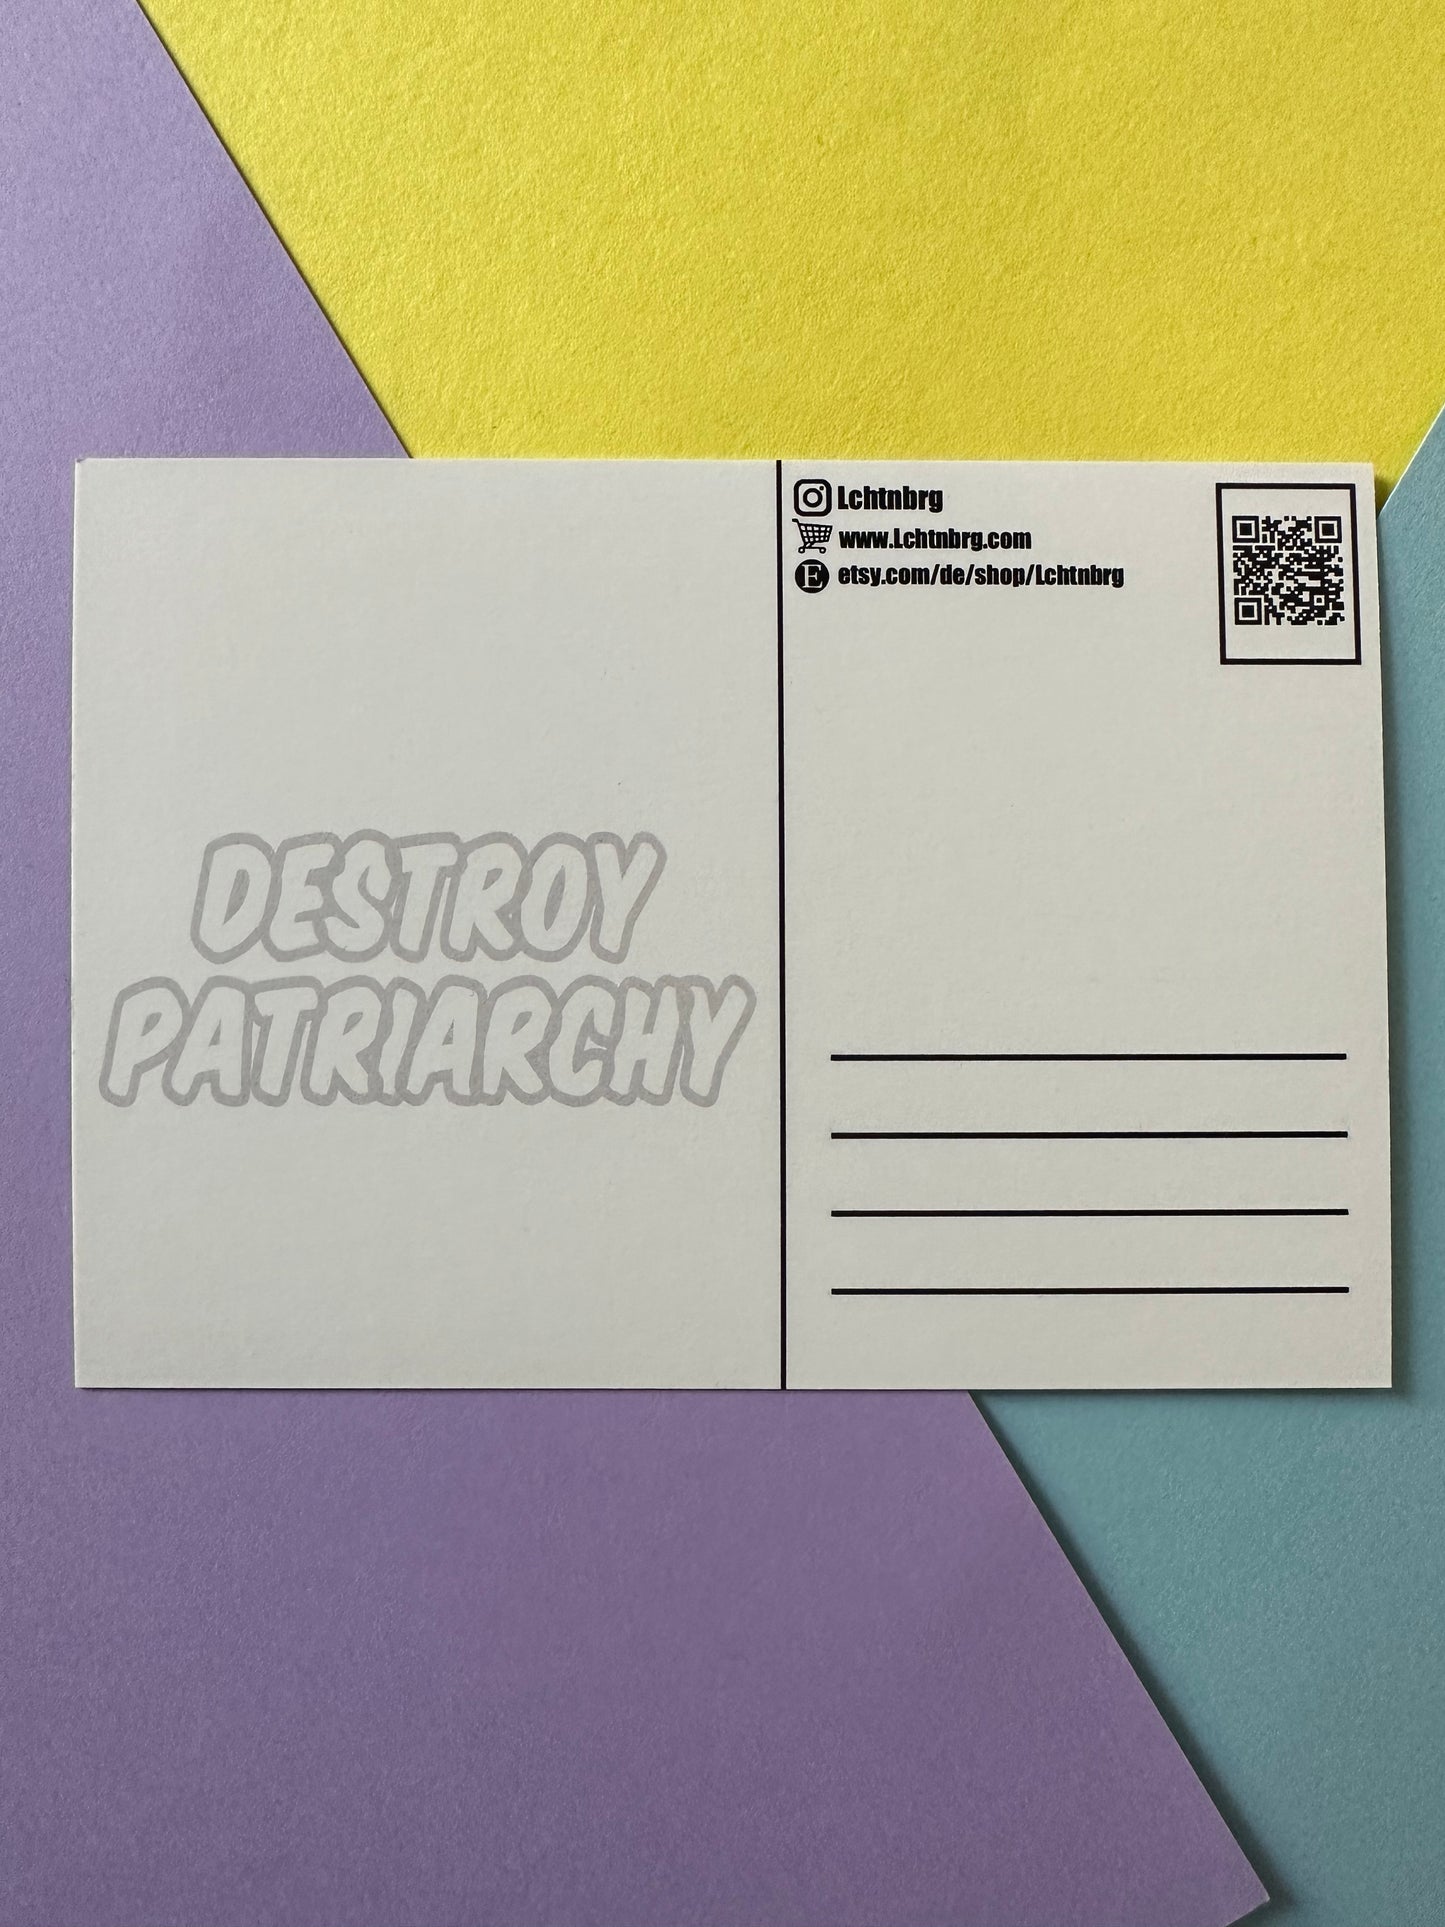 Postkarte „Destroy Patriarchy“